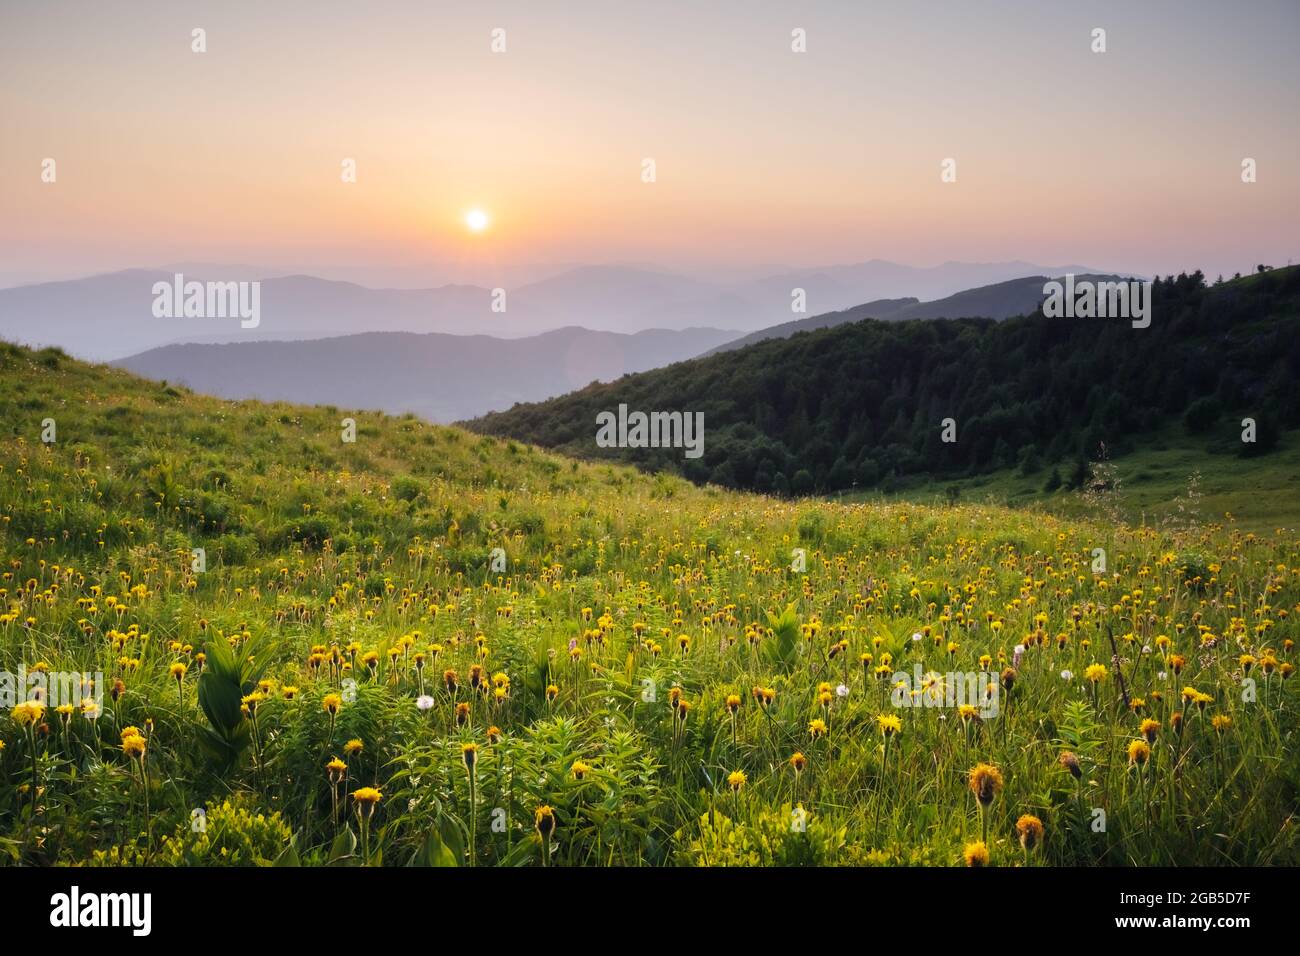 Fantastische Szene in den Bergen im Sommer. Üppig grüne Wiesen in traumhafter Abendsonne. Karpaten, Europa. Landschaftsfotografie Stockfoto